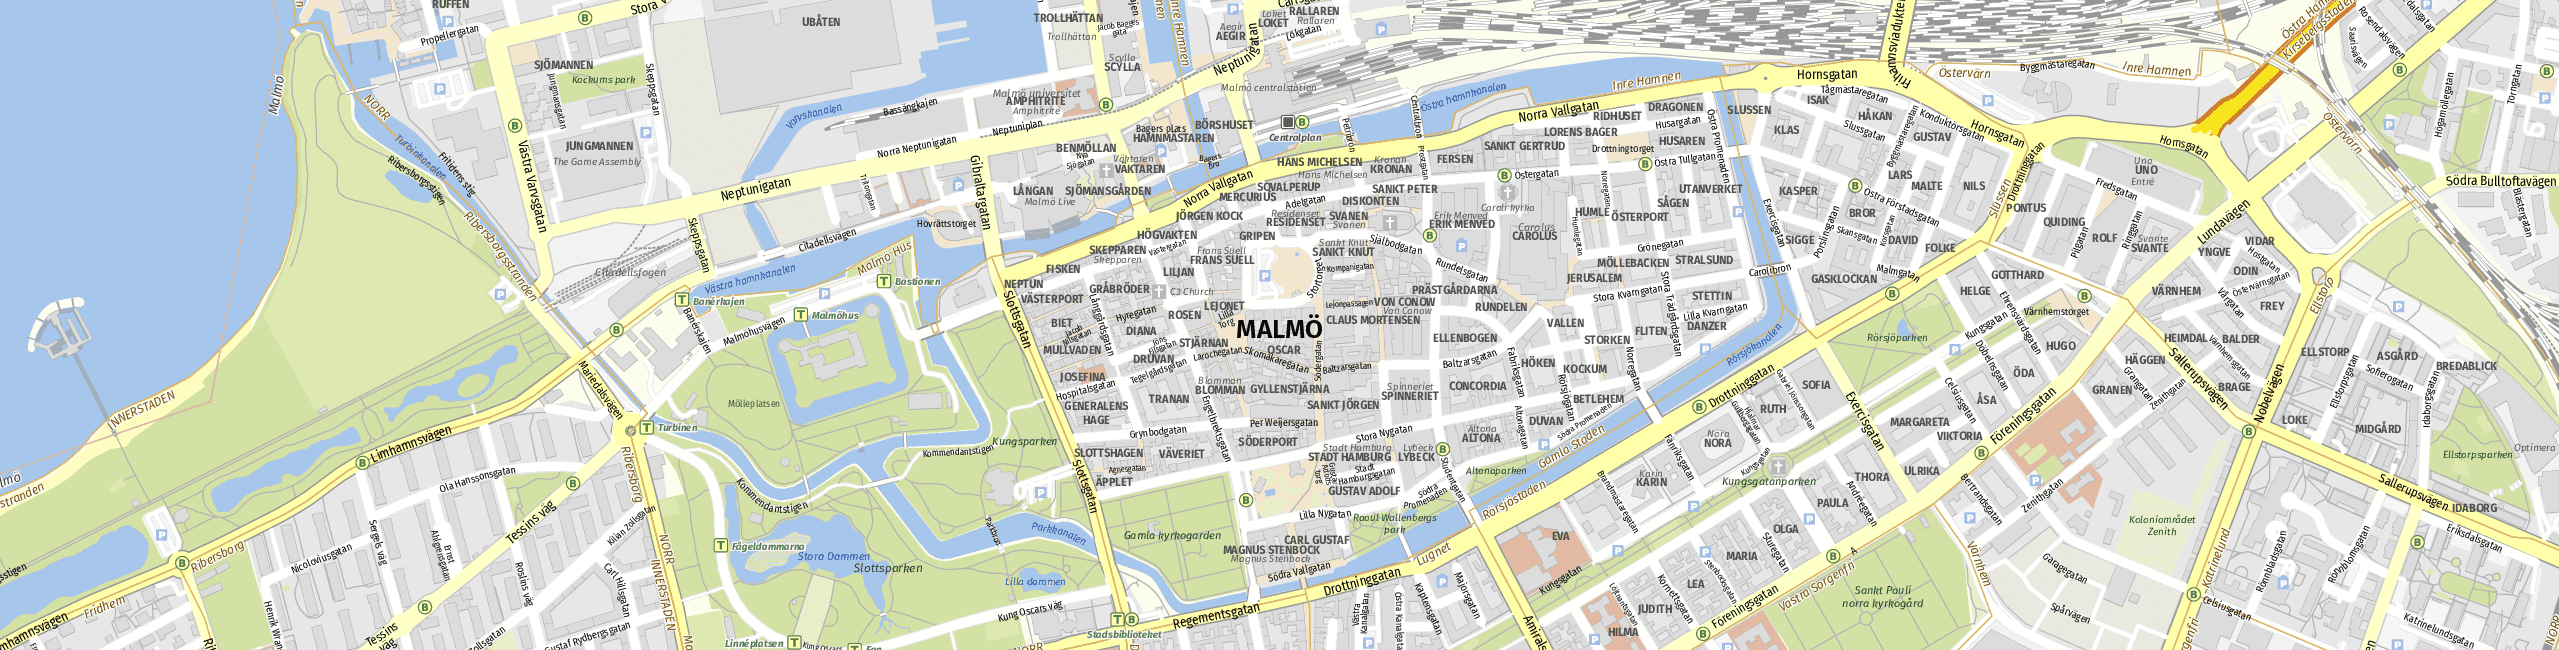 Stadtplan Malmö zum Downloaden.